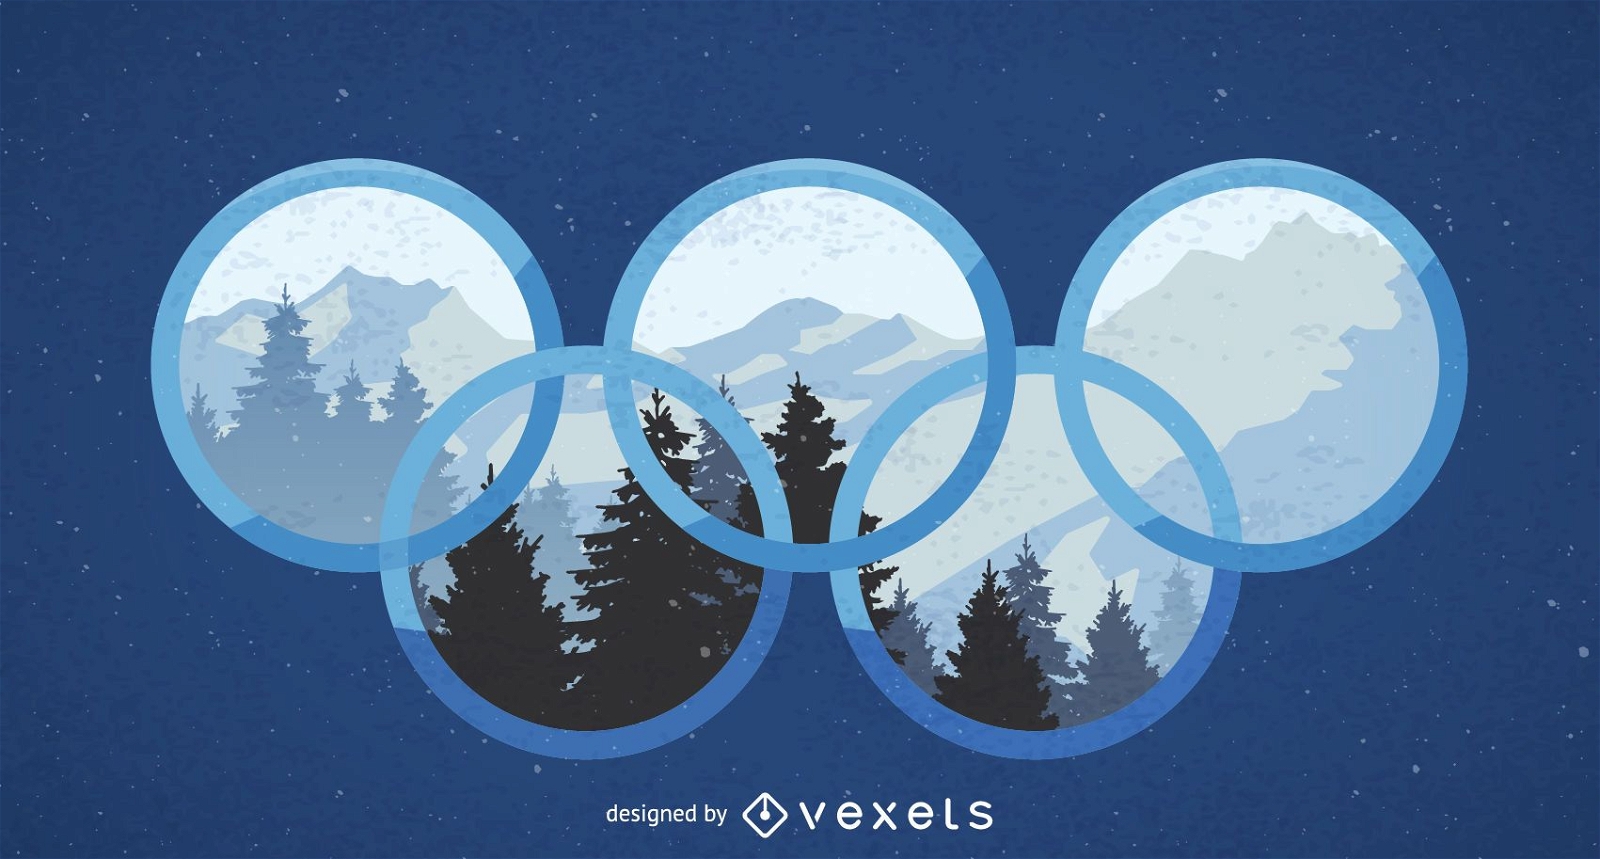 Design dos Jogos Ol?mpicos de Inverno de 2018